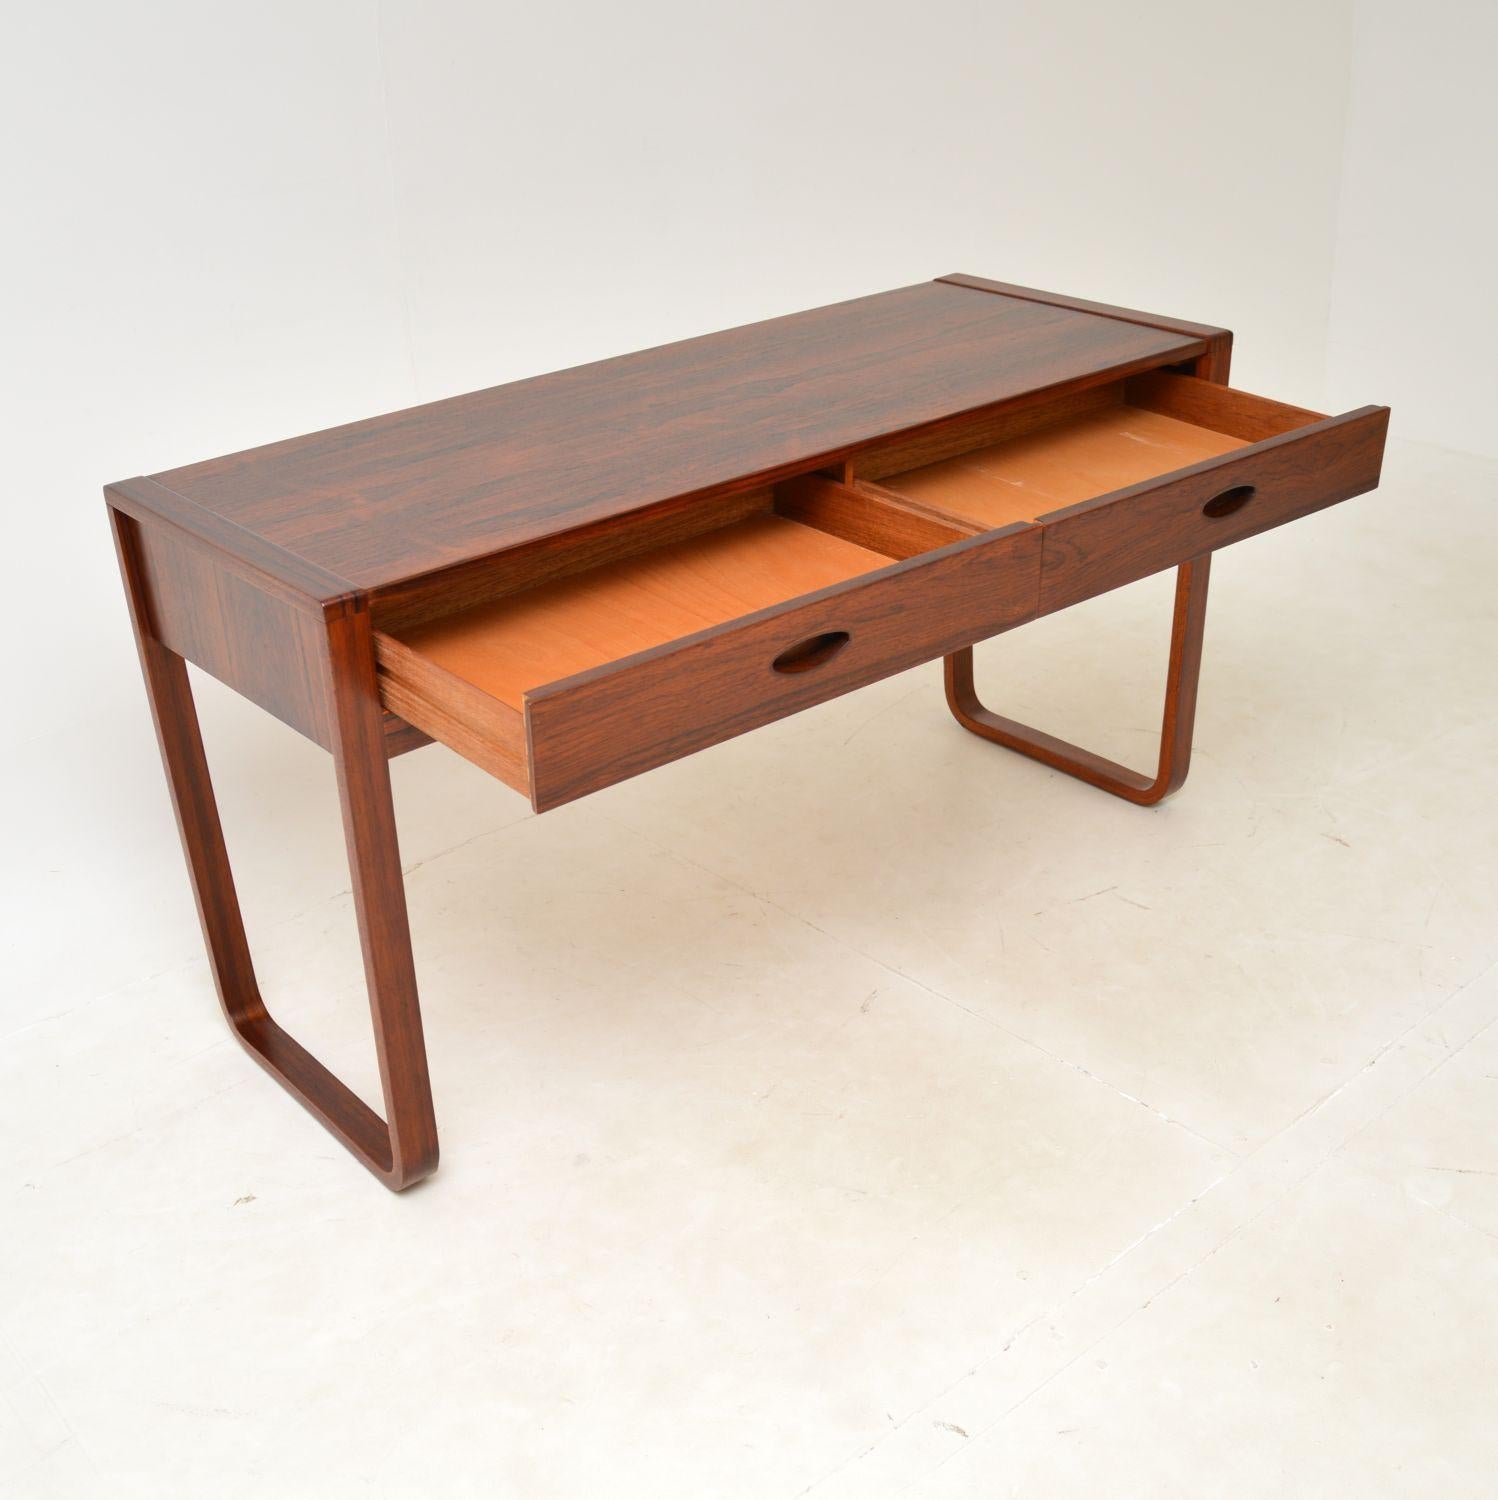 Une élégante et très rare table console / bureau vintage par Uniflex. Conçu par Gunther Hoffstead pour Uniflex, il a été fabriqué en Angleterre et date des années 1960.

Il est d'une qualité exceptionnelle et d'un design magnifique. Il y a deux